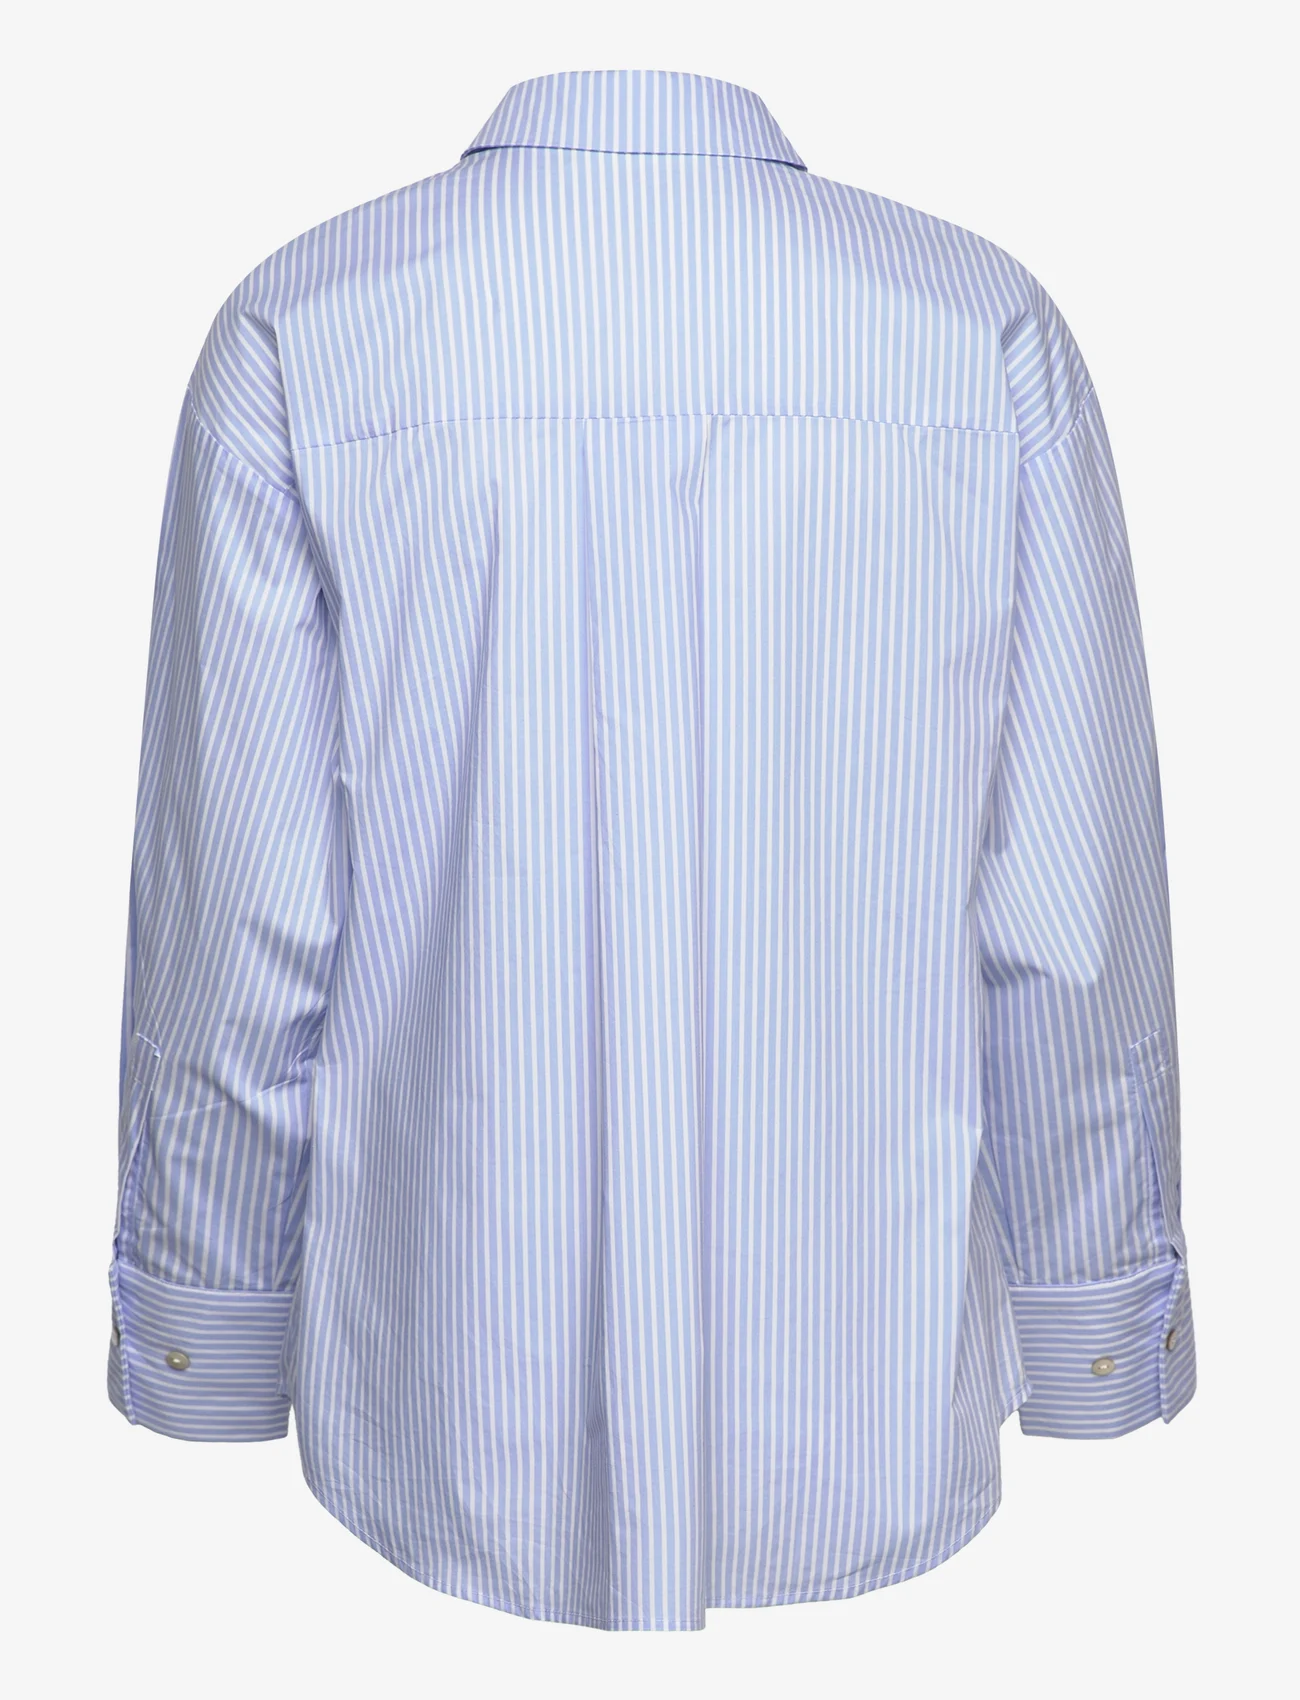 Sofie Schnoor - Shirt - långärmade skjortor - light blue striped - 1